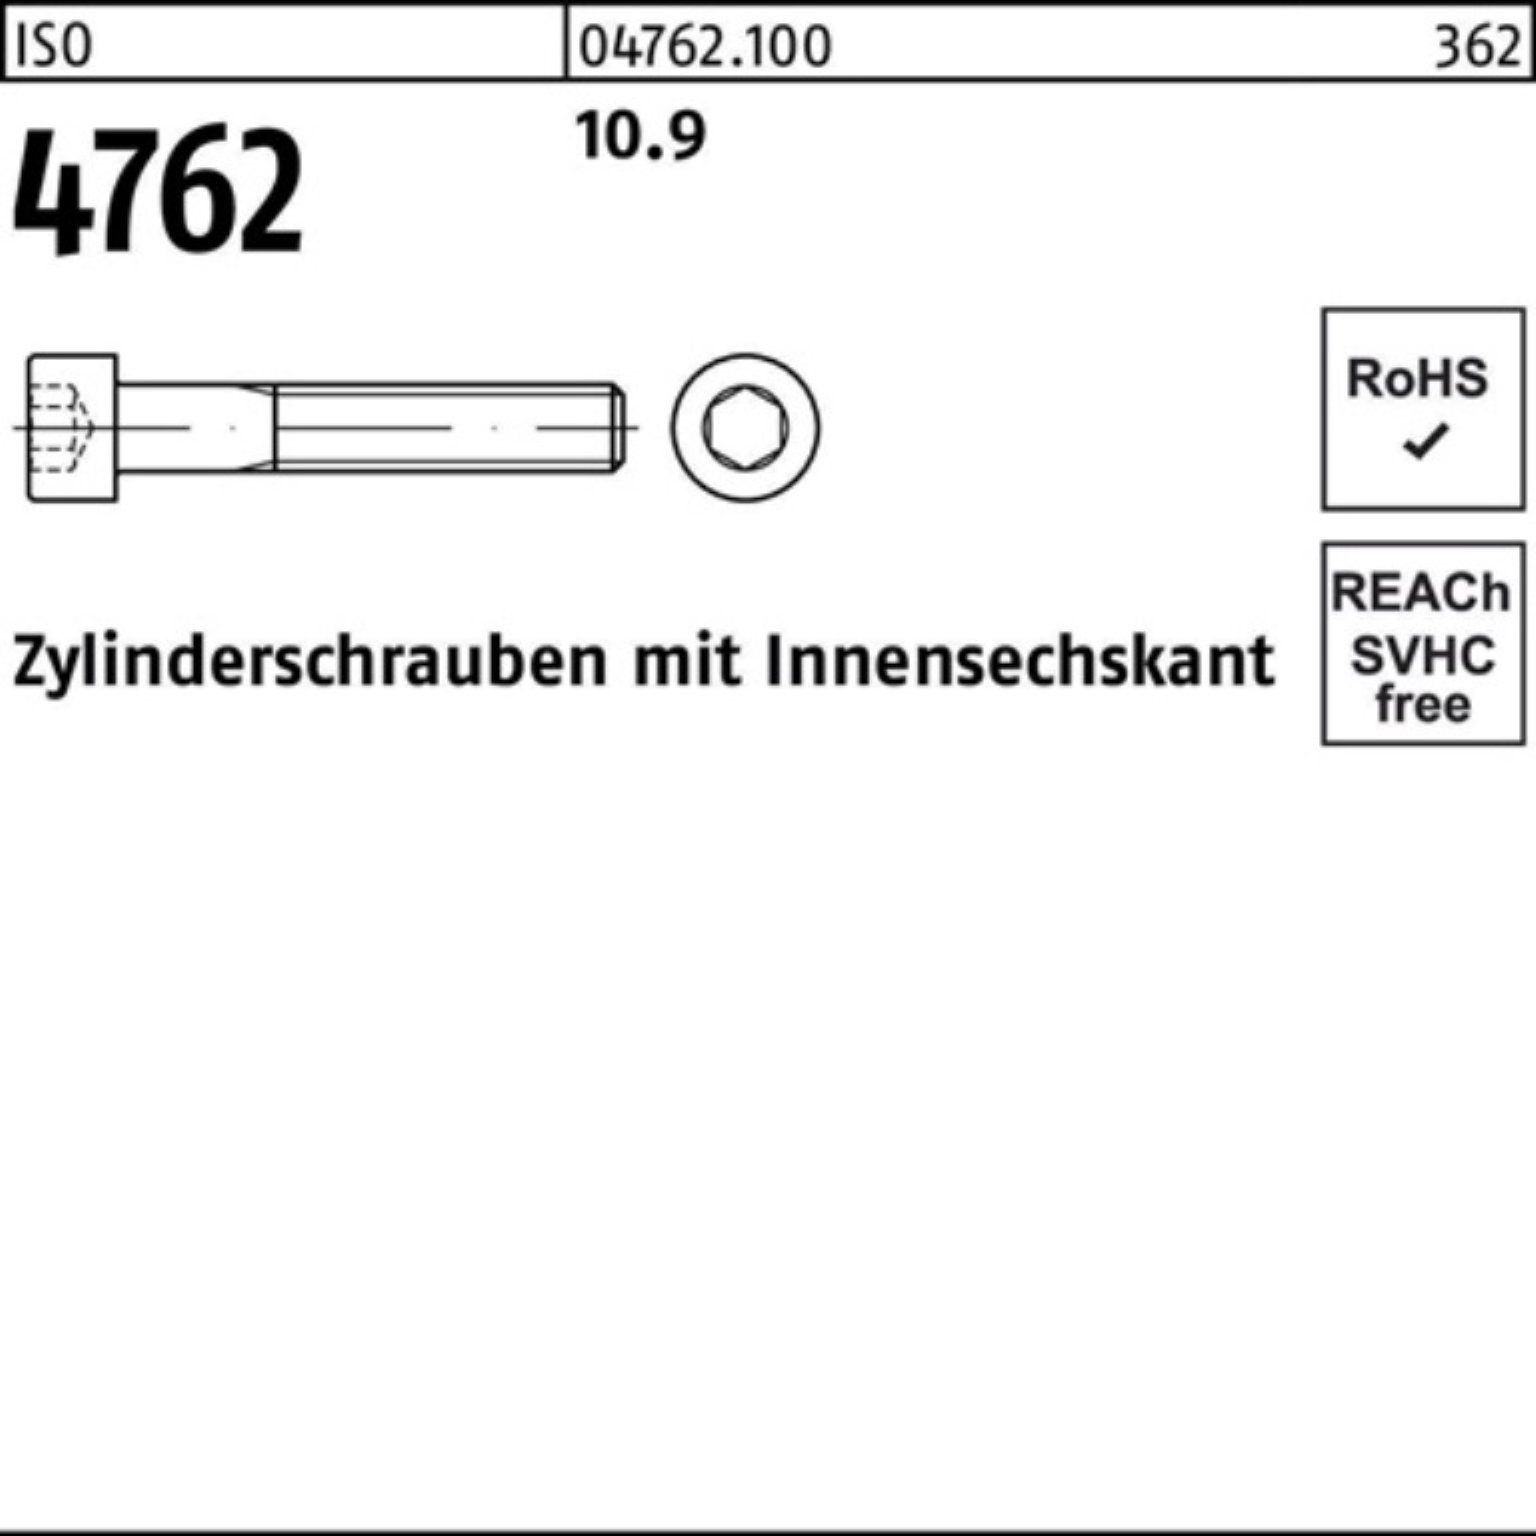 100er Stück Zylinderschraube 4762 Innen-6kt 10.9 Reyher ISO Pack 1 420 M42x Zylinderschraube